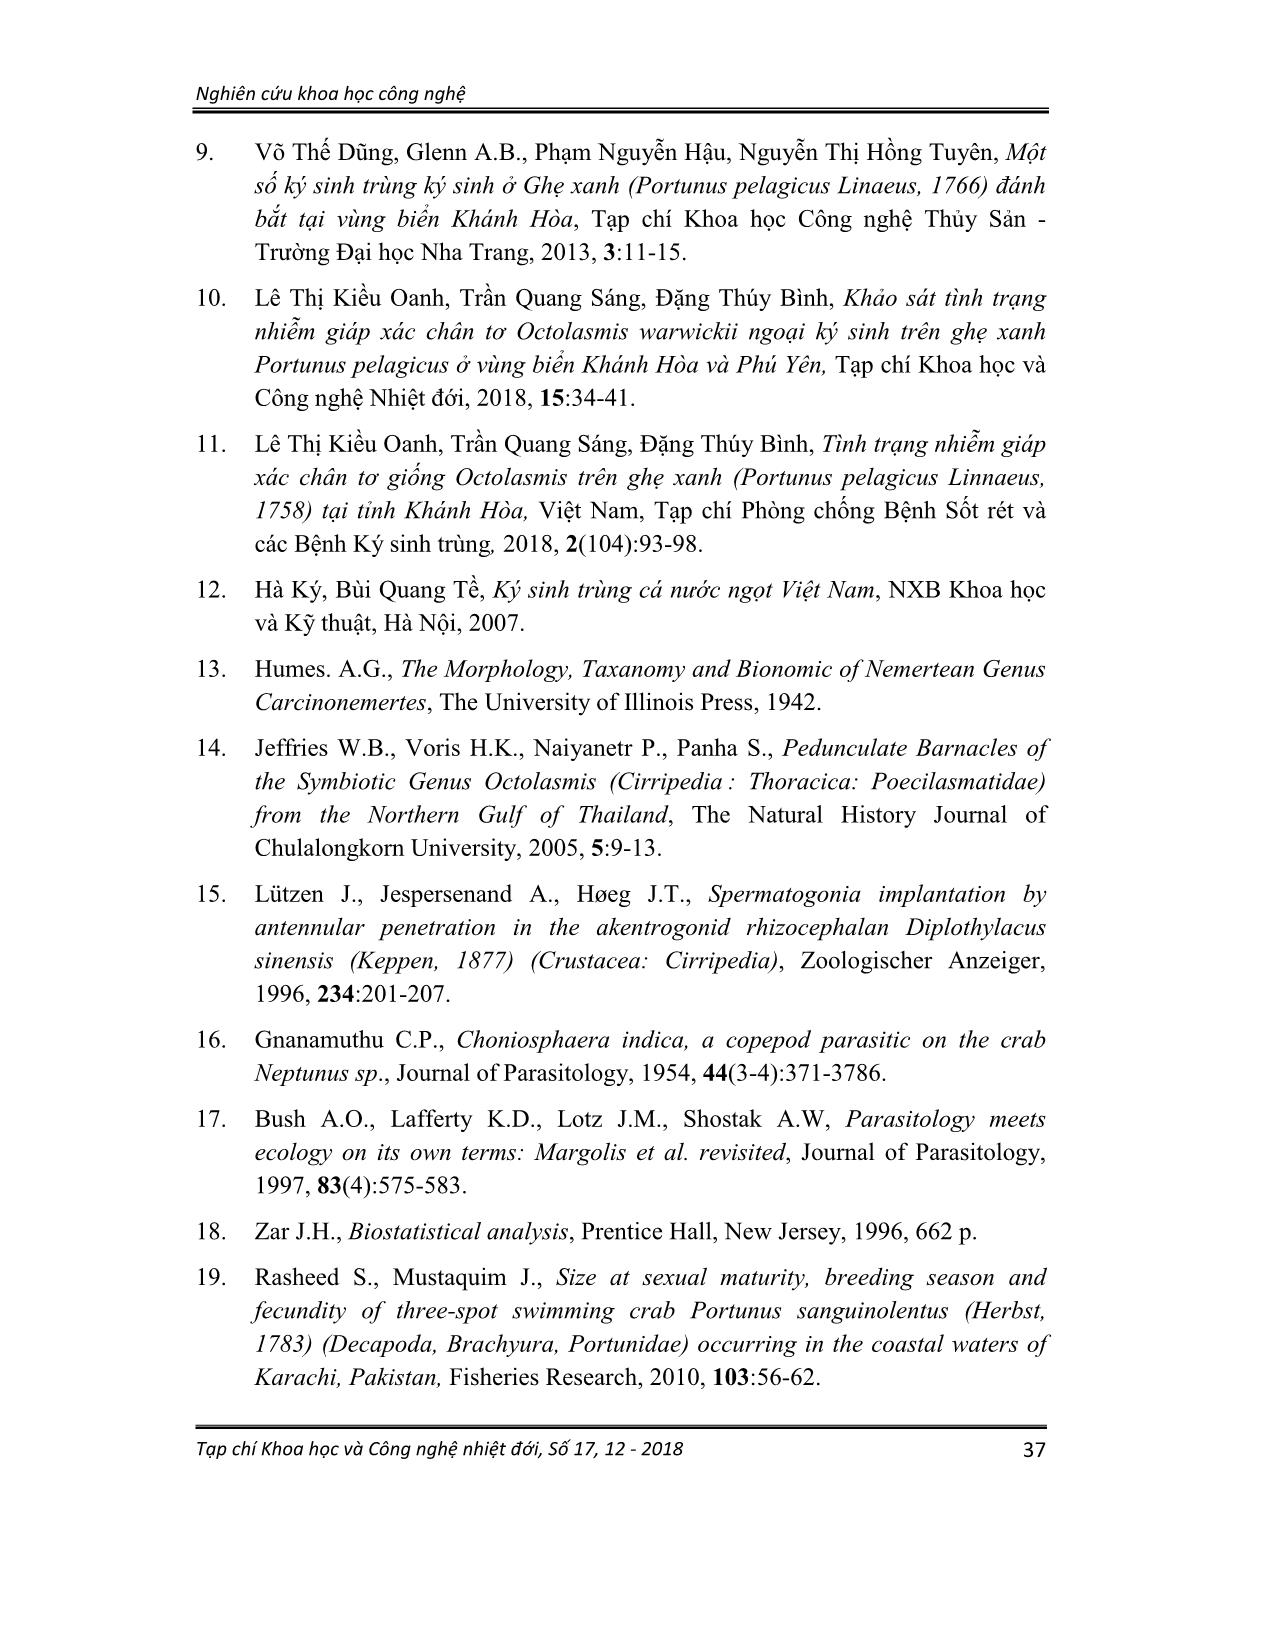 Một số ngoại ký sinh trùng ký sinh trên ghẹ ba chấm (portunus sanguinolentus herbst, 1783) thu tại vùng biển Khánh Hòa trang 10